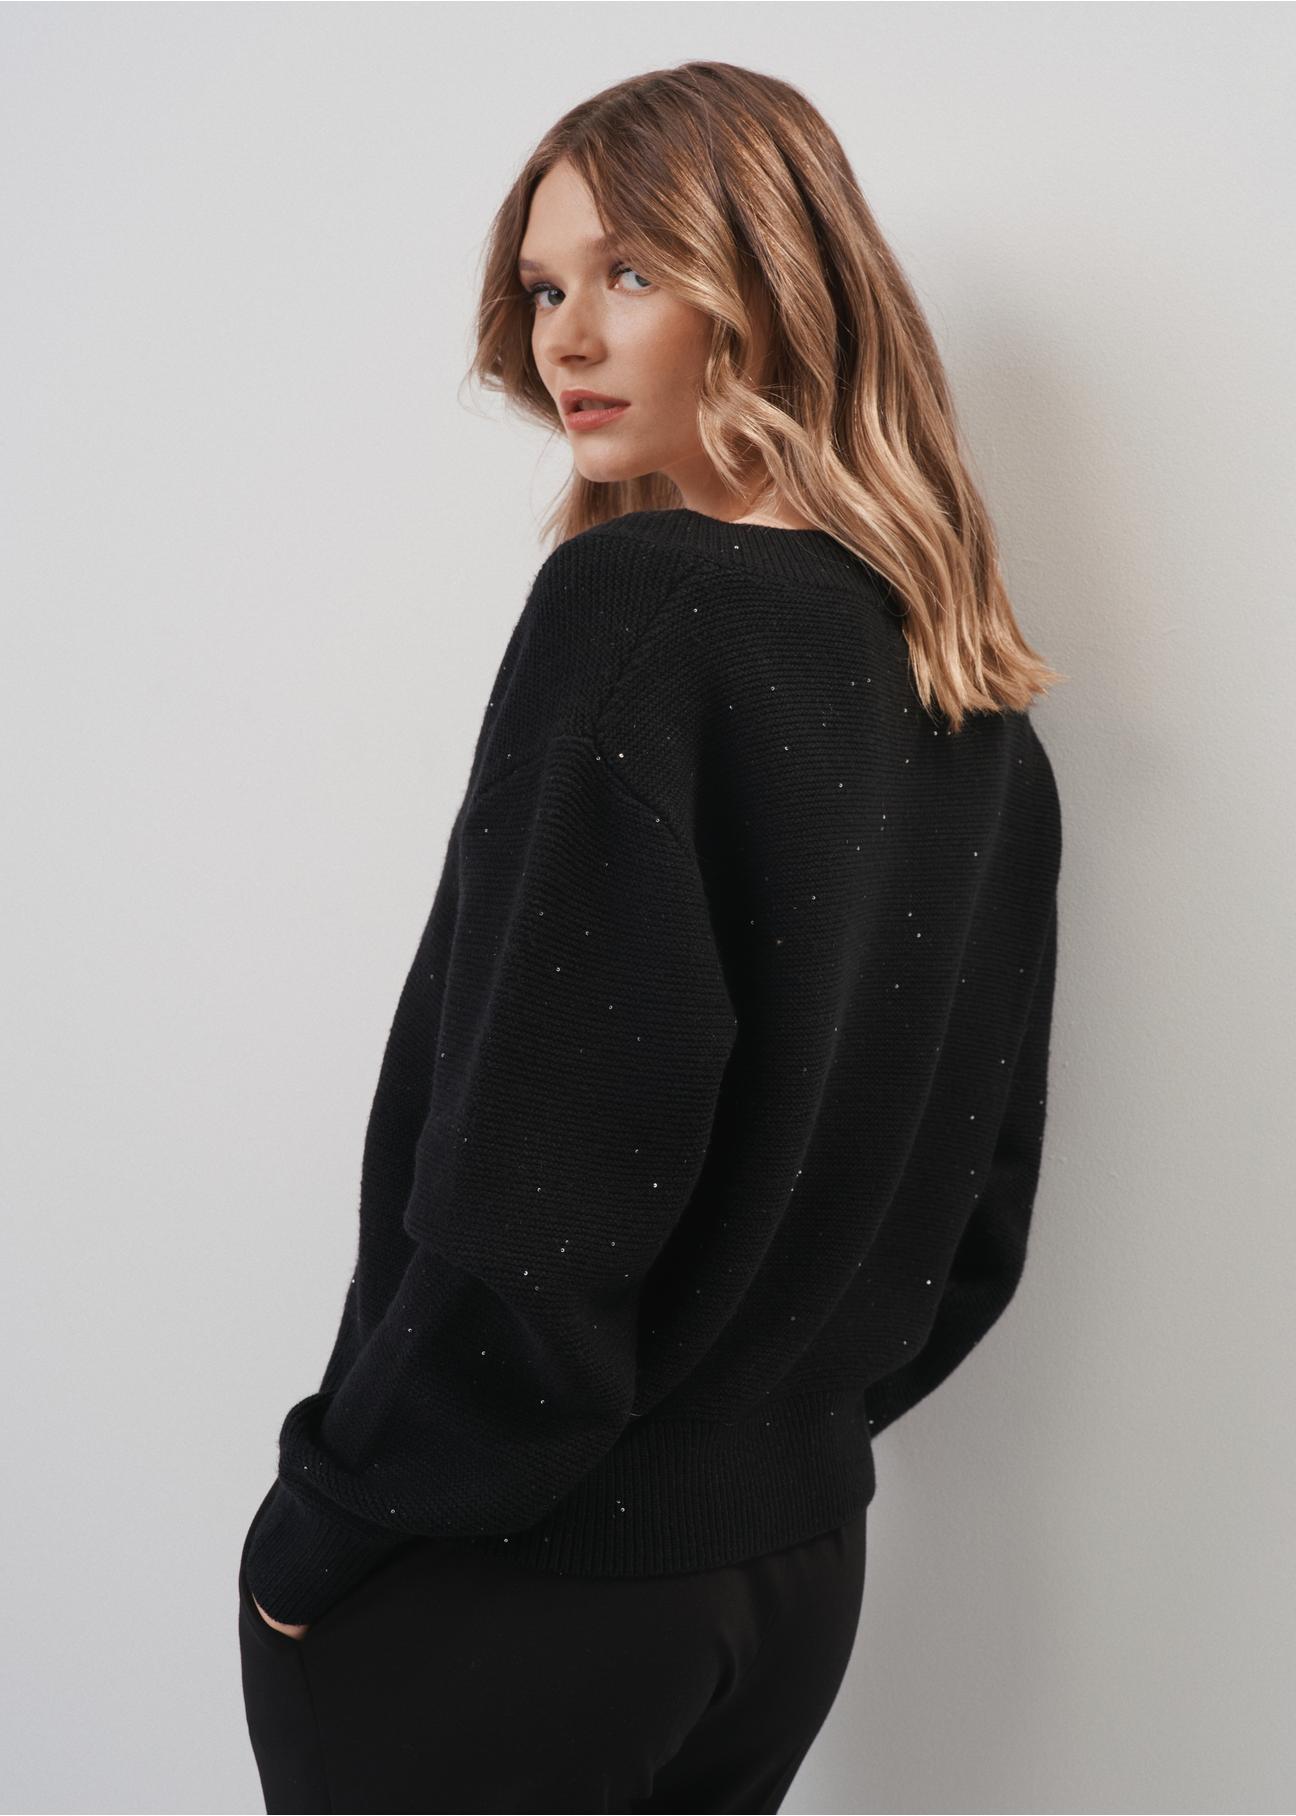 Luźny czarny sweter damski z cekinami SWEDT-0192-99(Z23)